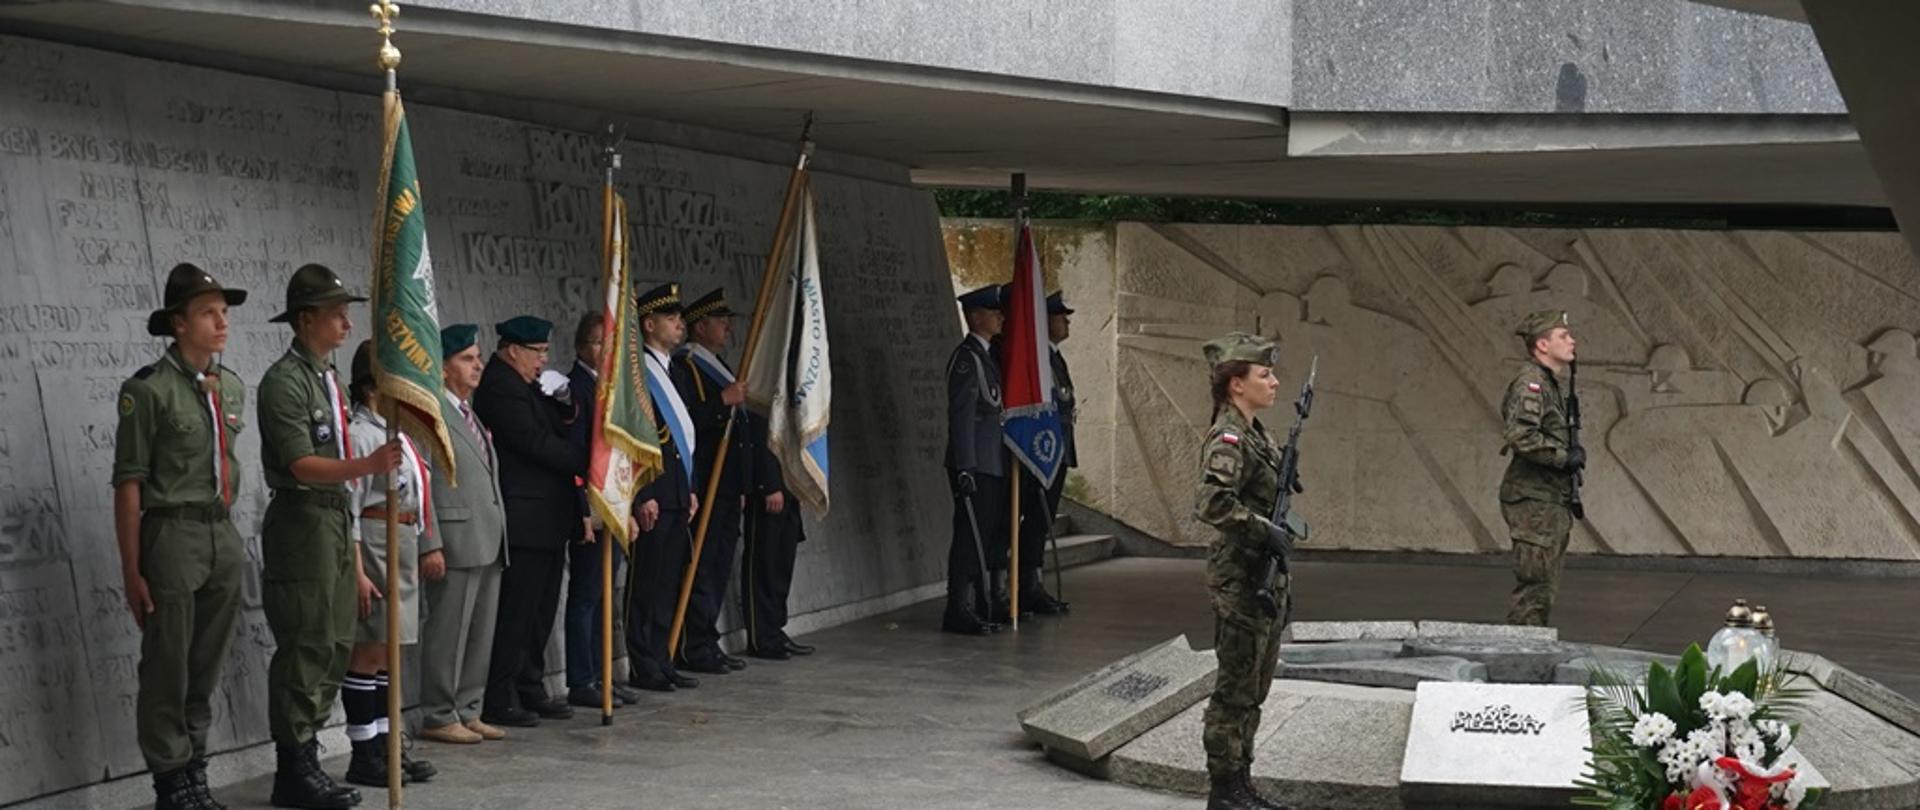 poczty sztandarowe stoją pod betonowym pomnikiem, przed nimi warta dwóch osób w mundurach wojskowych i z karabinami, przed wartą leży biało czerwony wieniec oraz palą się znicze